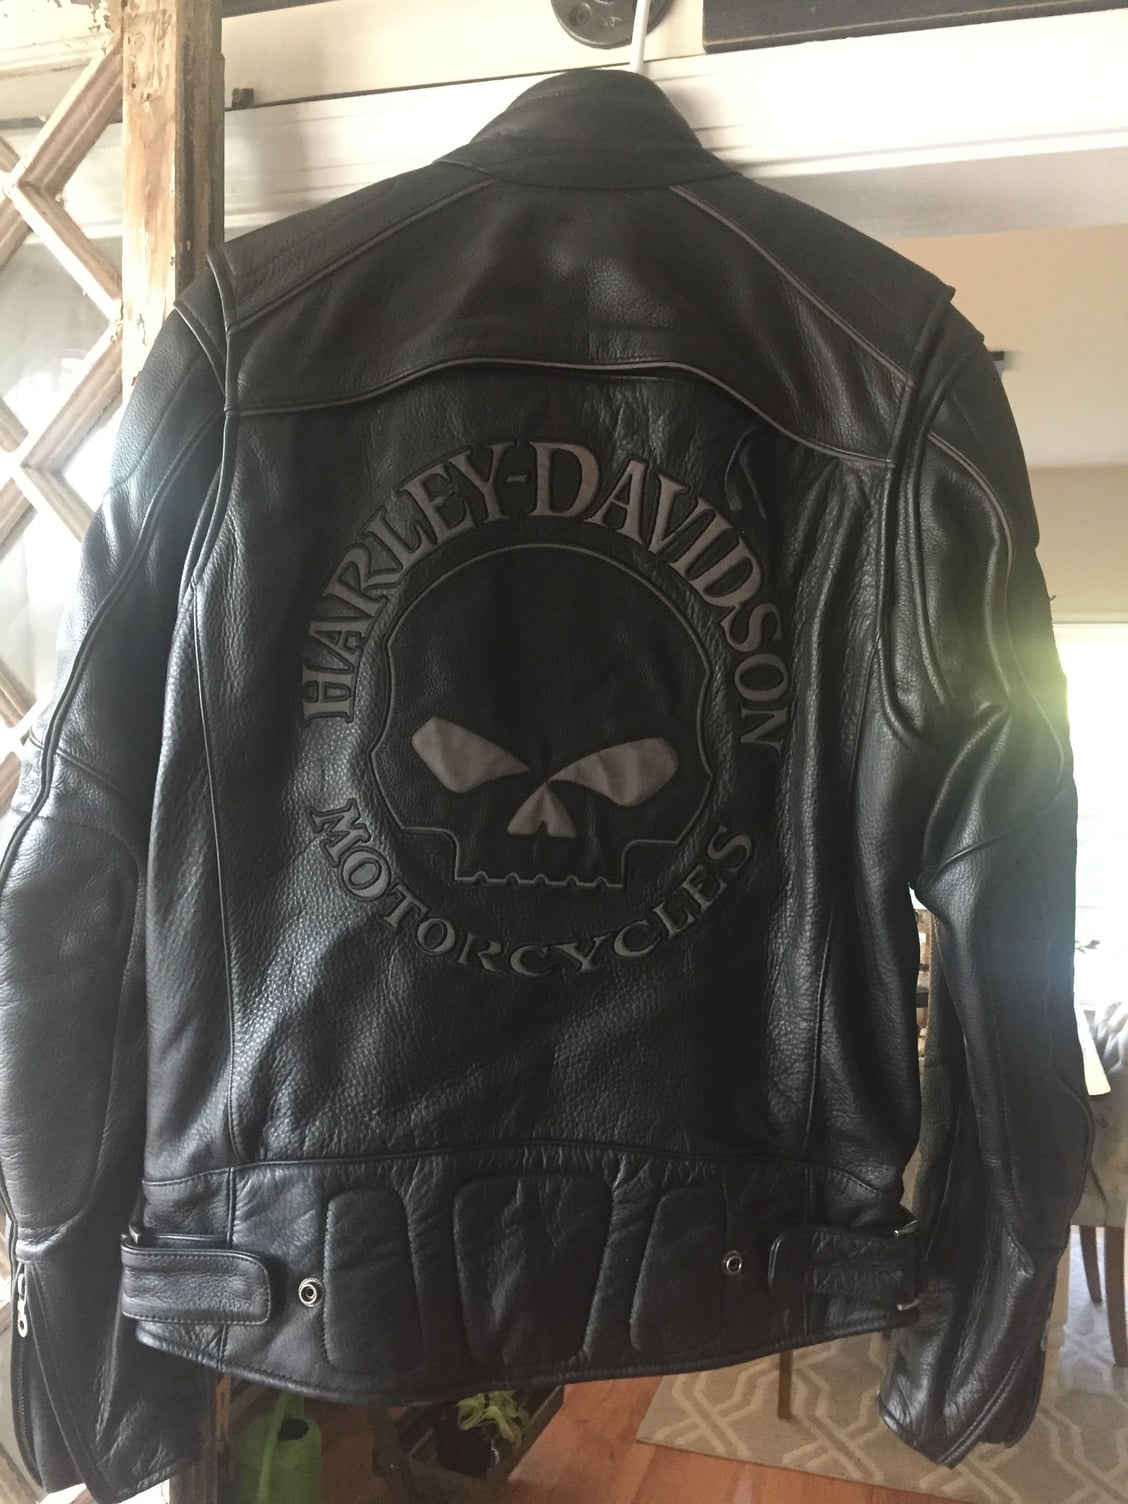 Harley Leather Willie G Jacket - Harley Davidson Forums